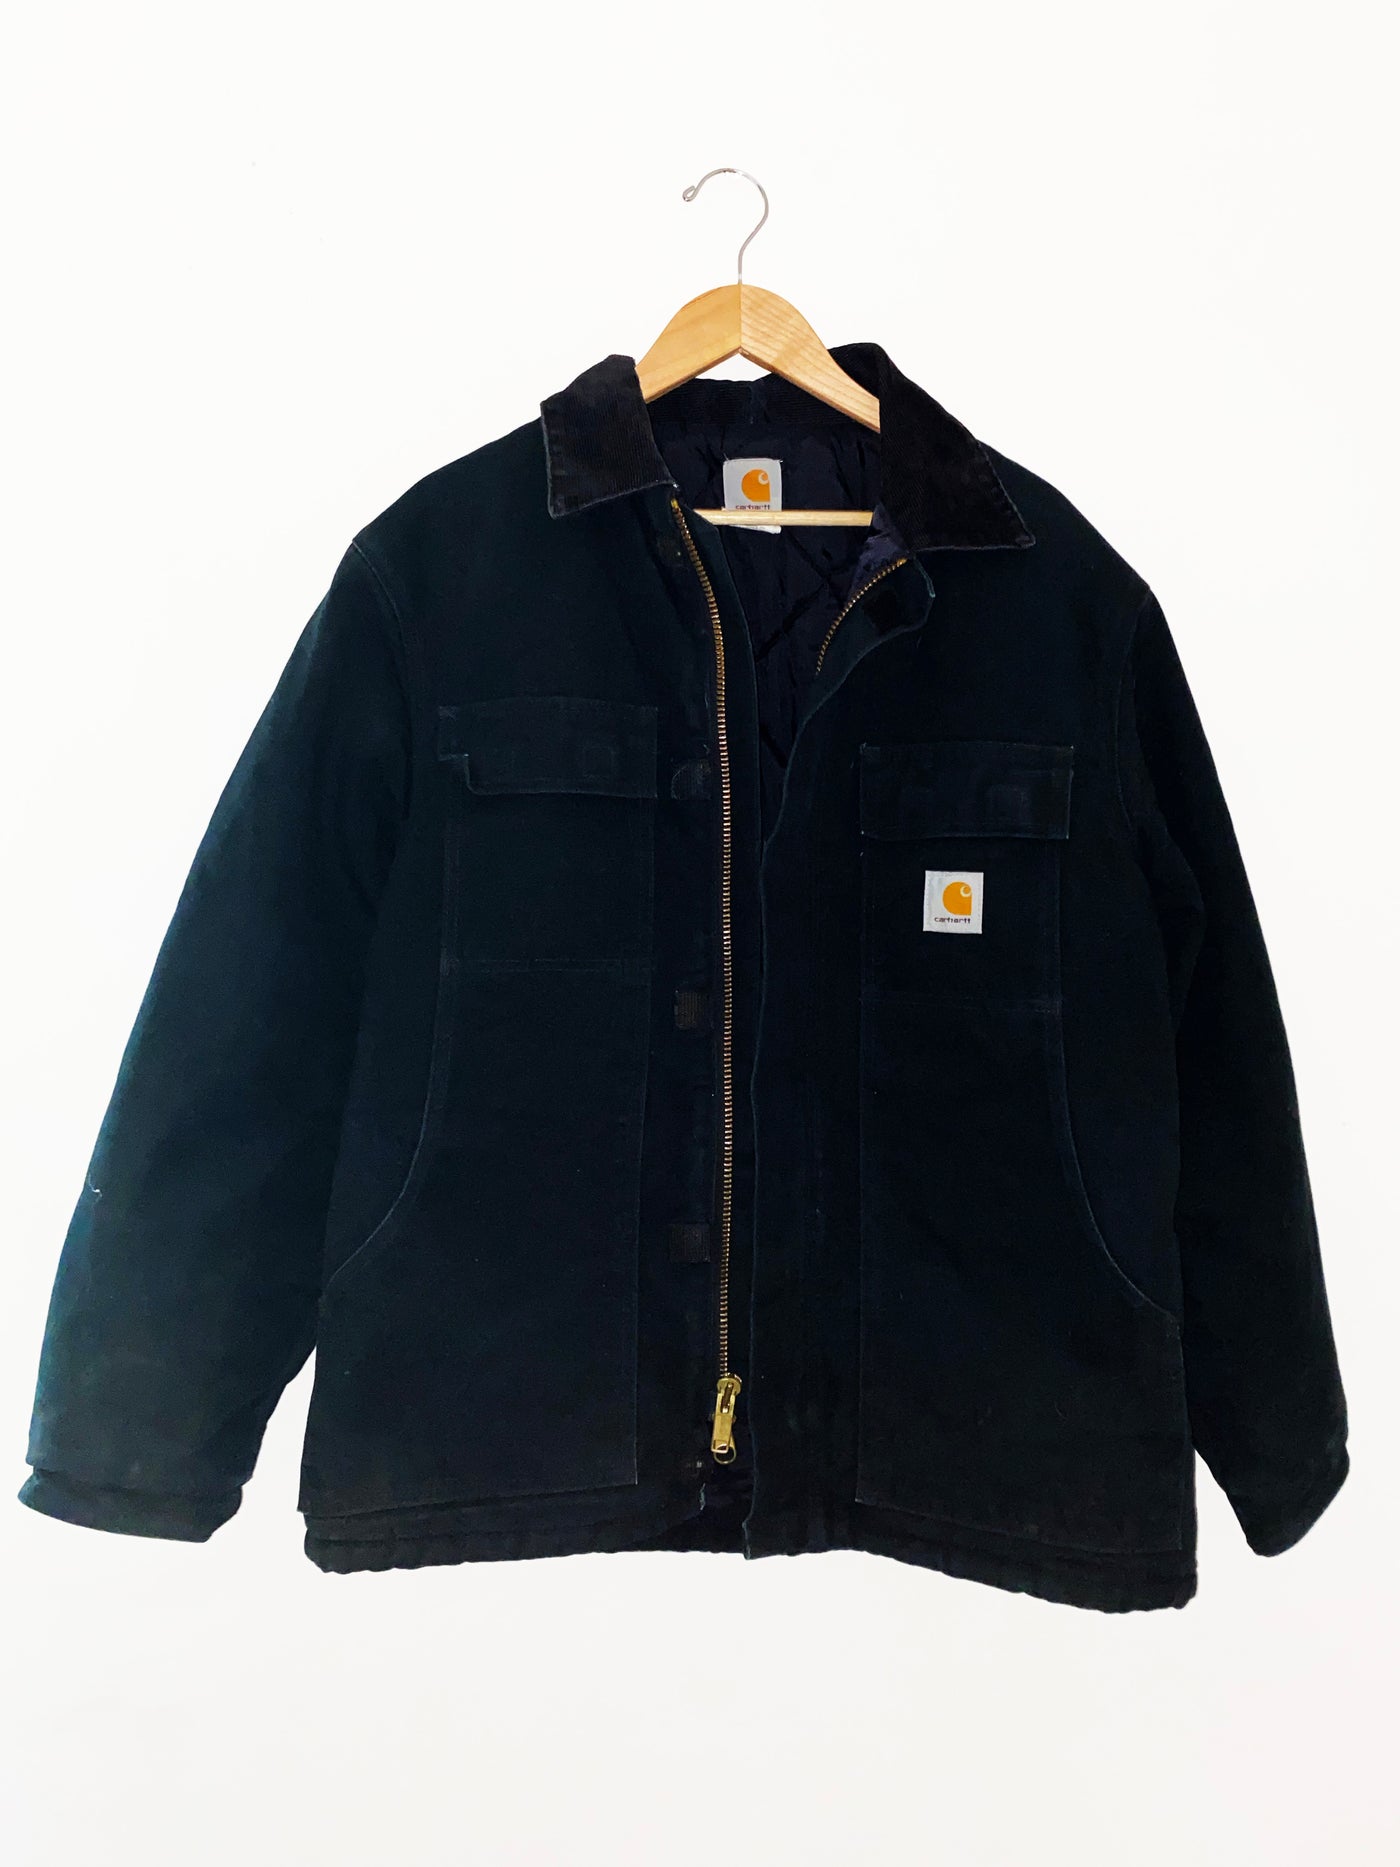 Vintage Carhartt Jacket in Black